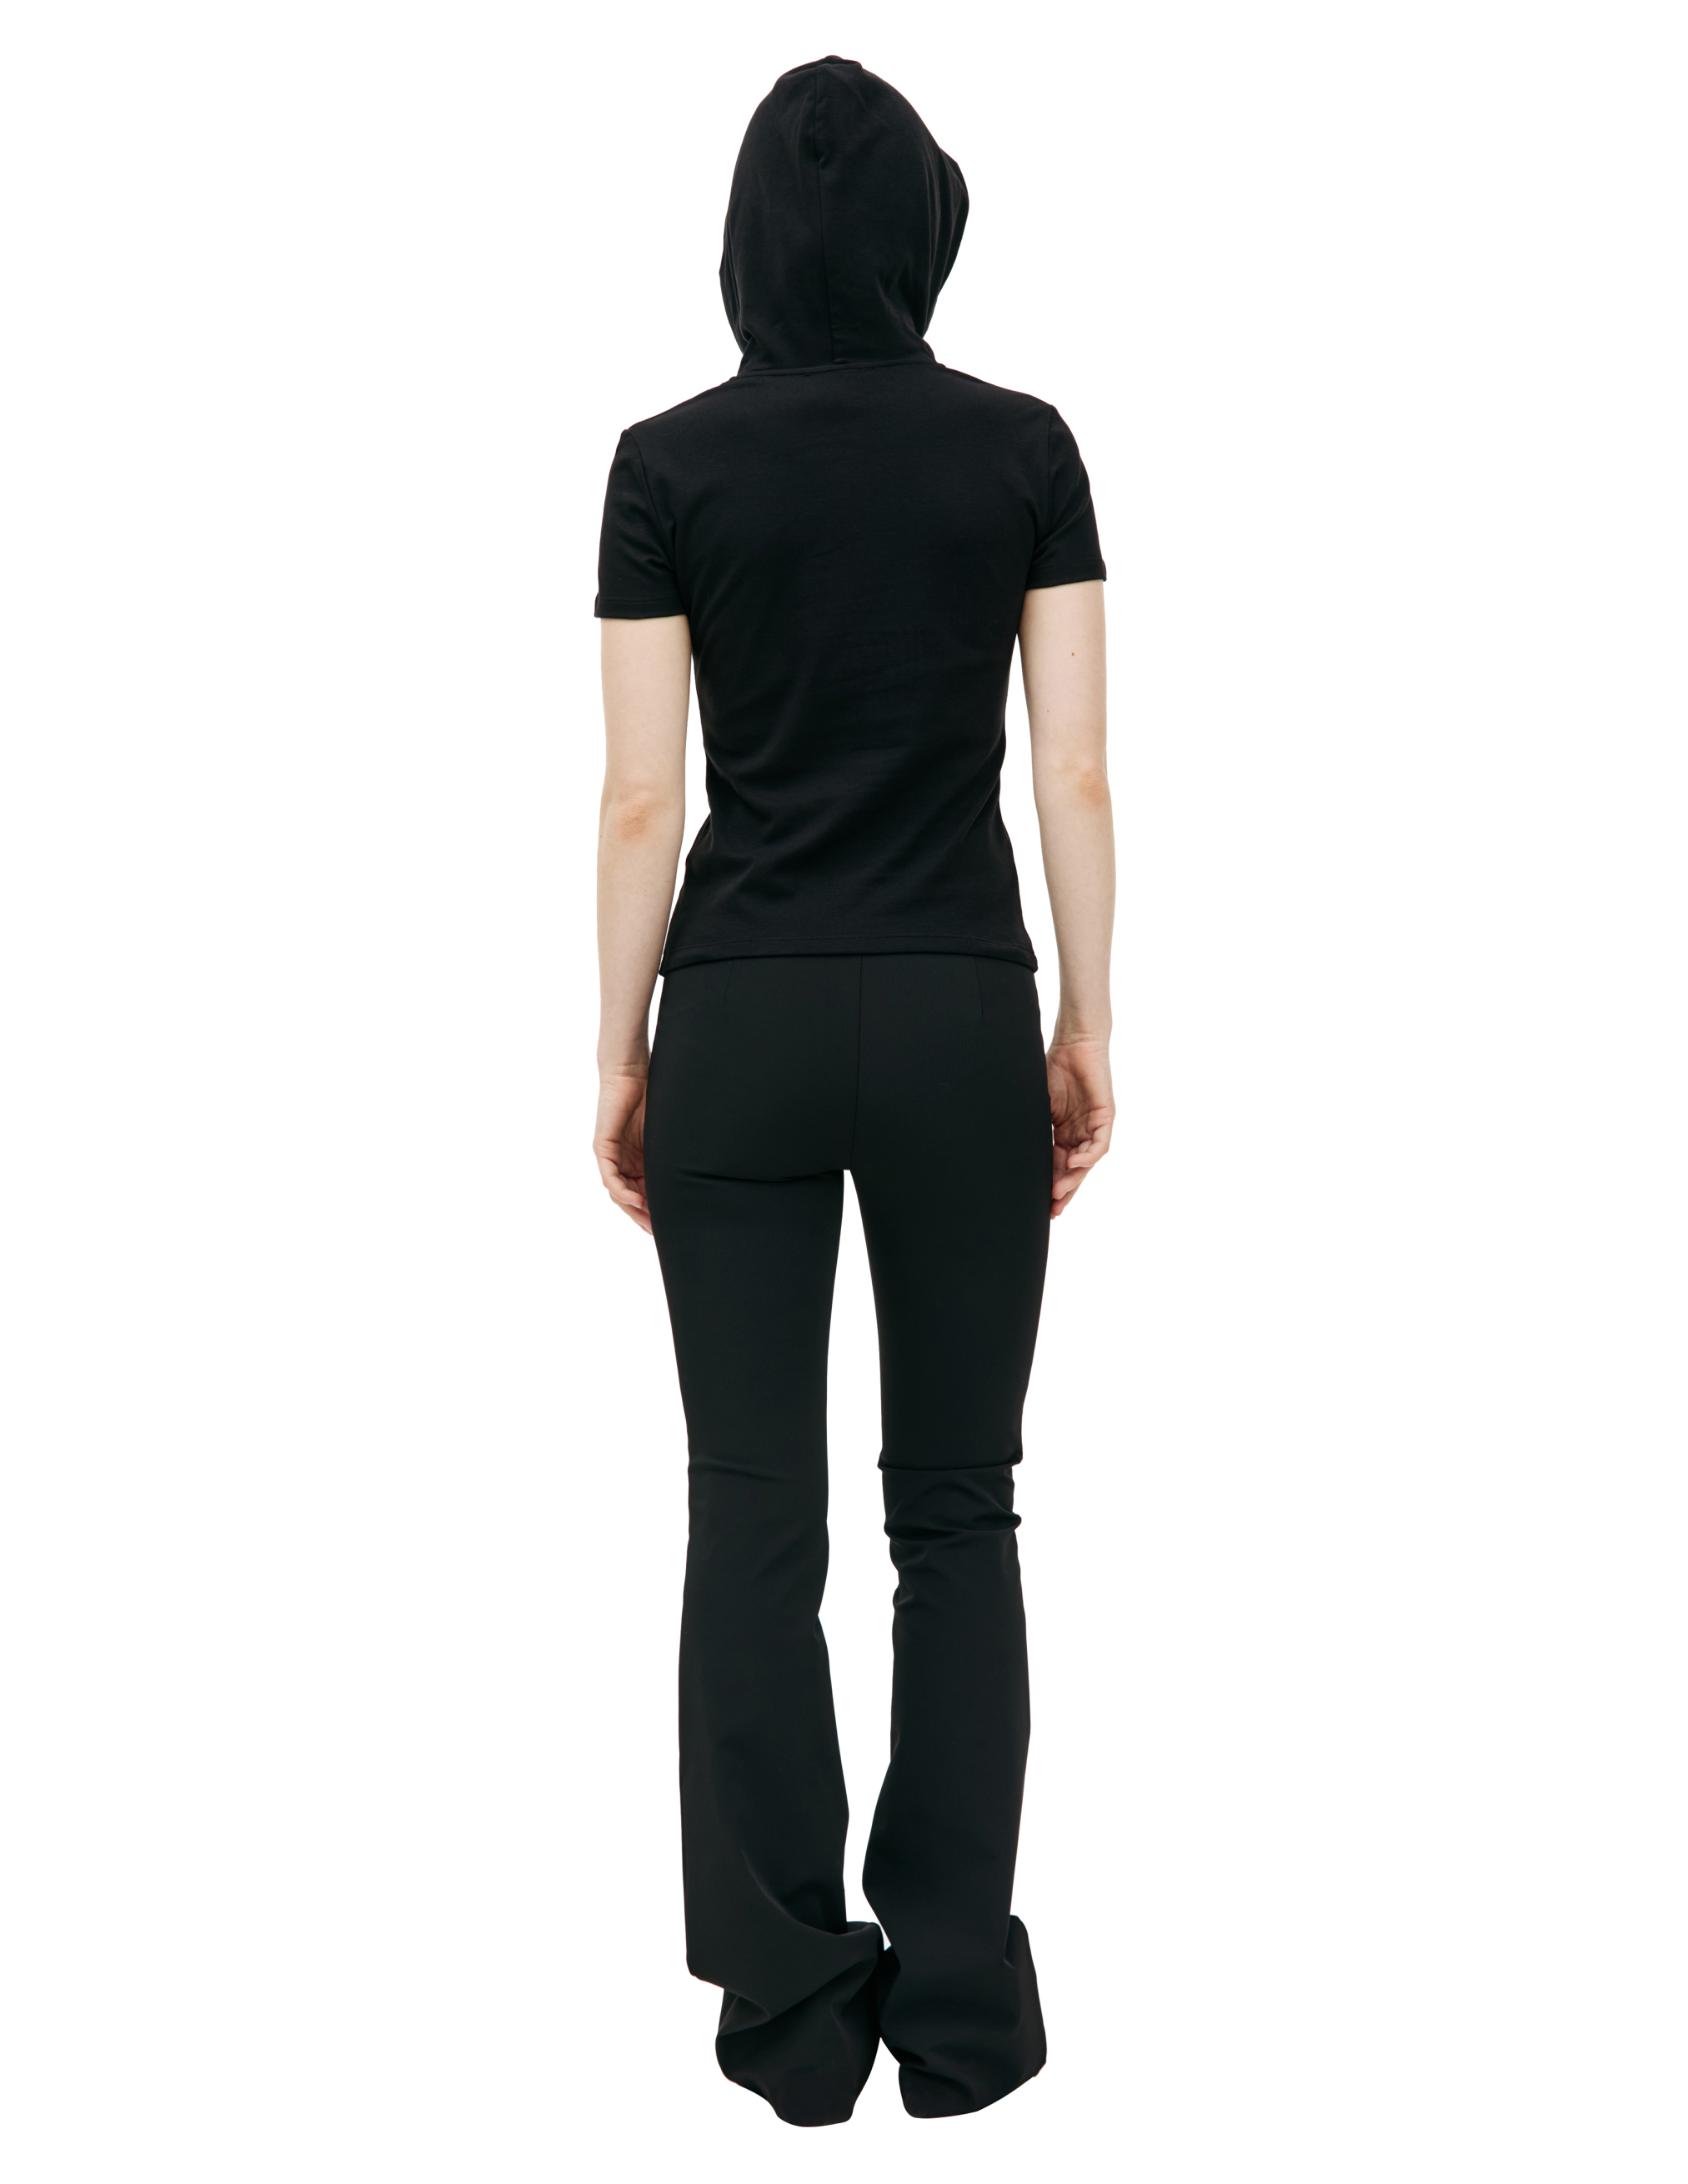 Черная футболка с капюшоном Blumarine P42/2T053A/N0990, размер S;L P42/2T053A/N0990 - фото 3